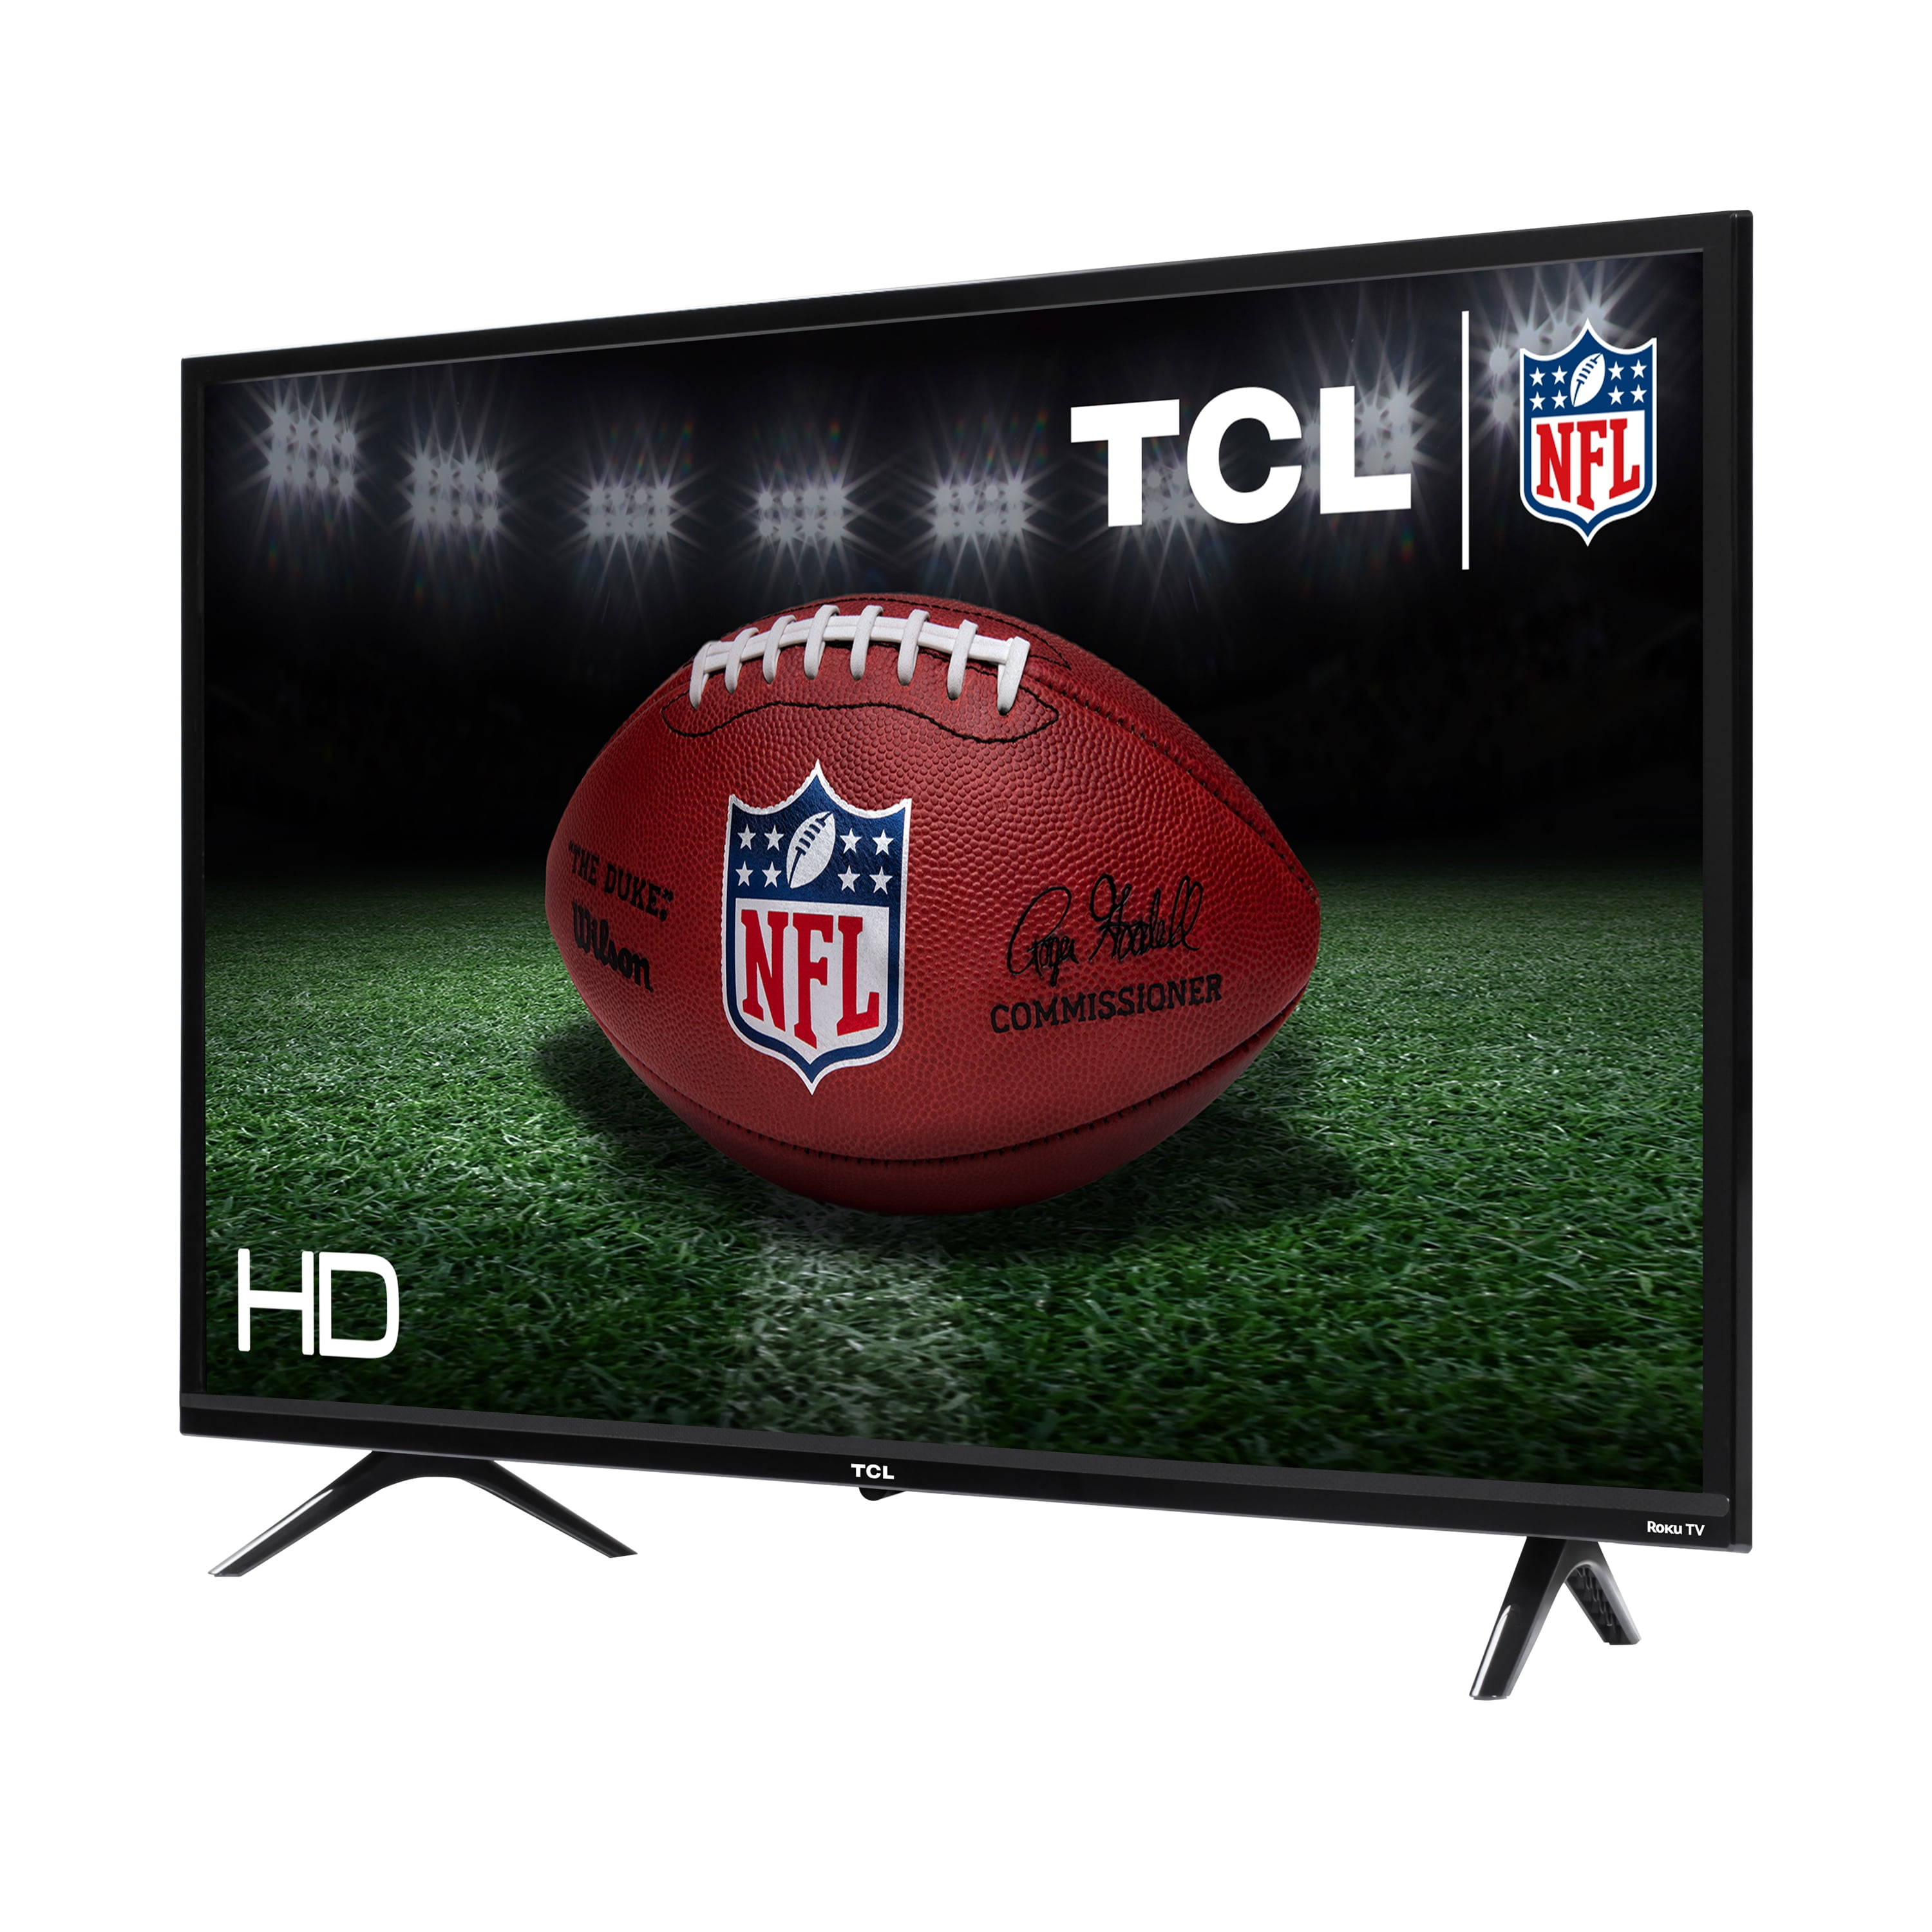 TCL téléviseur 32'' D3200 LED HD